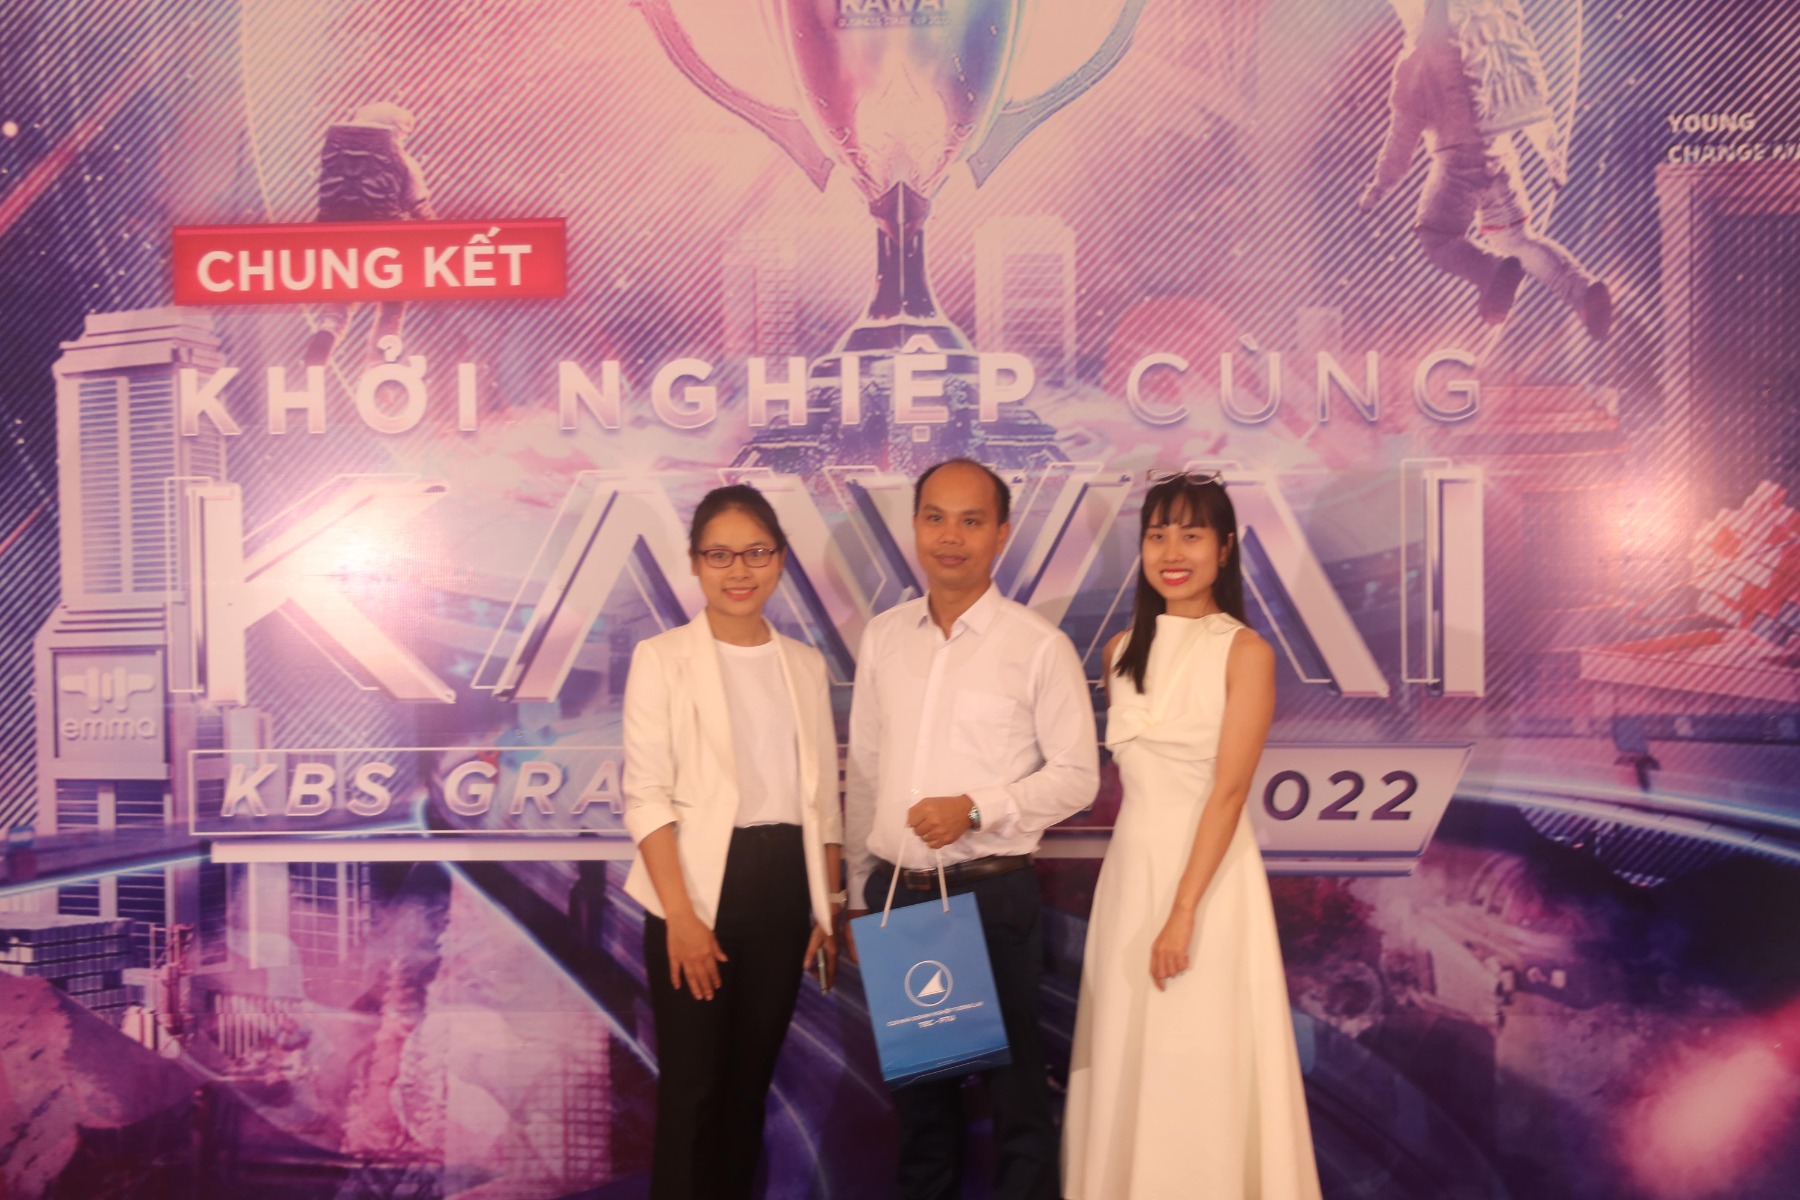 Ông Bùi Tuấn Minh cùng đại diện Đồng hồ Galle tới tham dự đêm chung kết cuộc thi “Khởi nghiệp cùng Kawai” 2022 